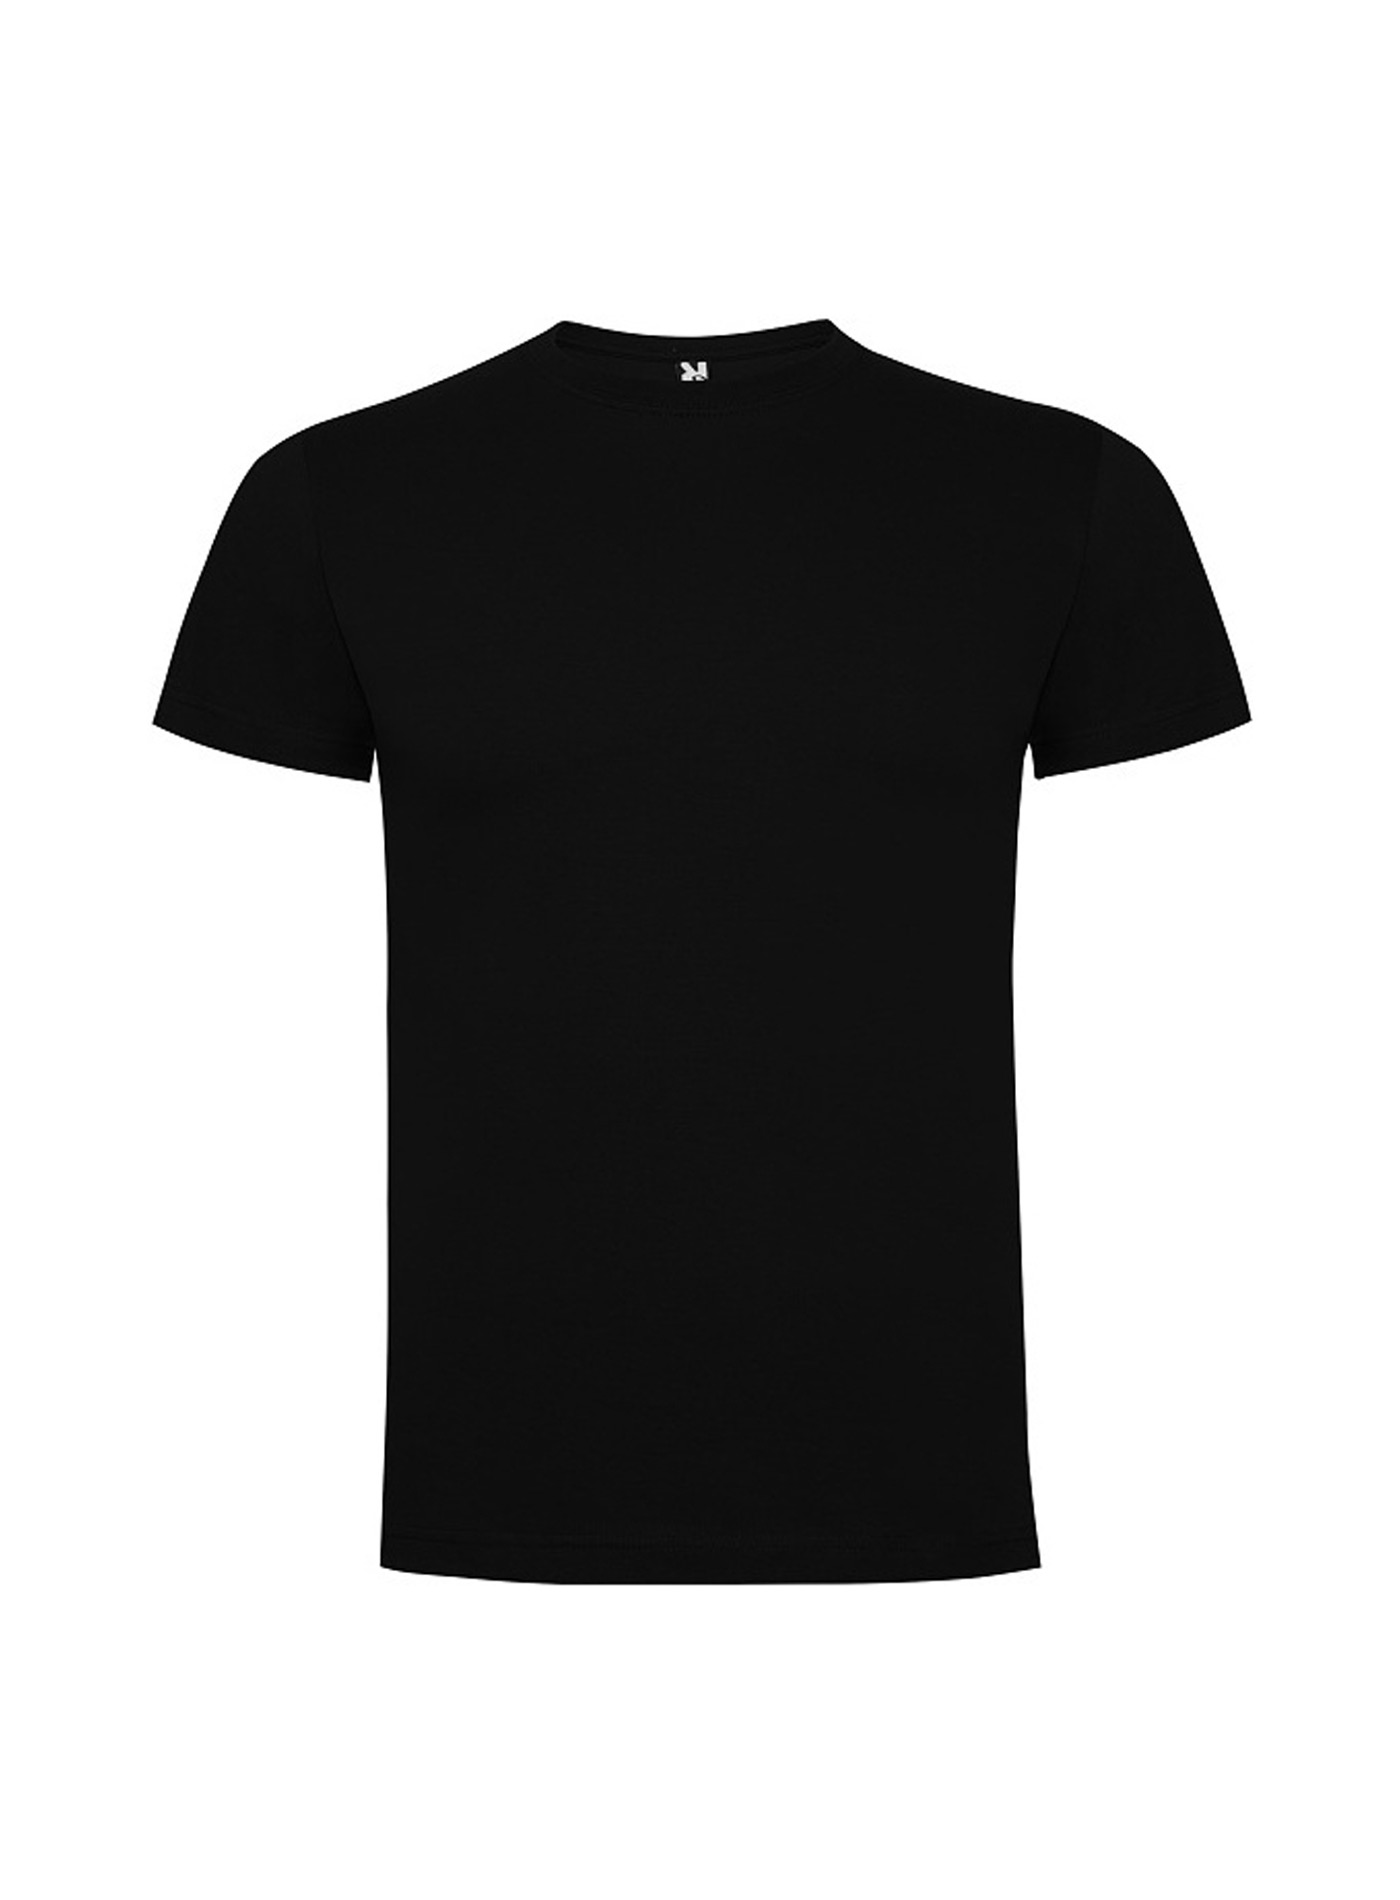 Dětské tričko Roly Dogo premium - Černá 3-4